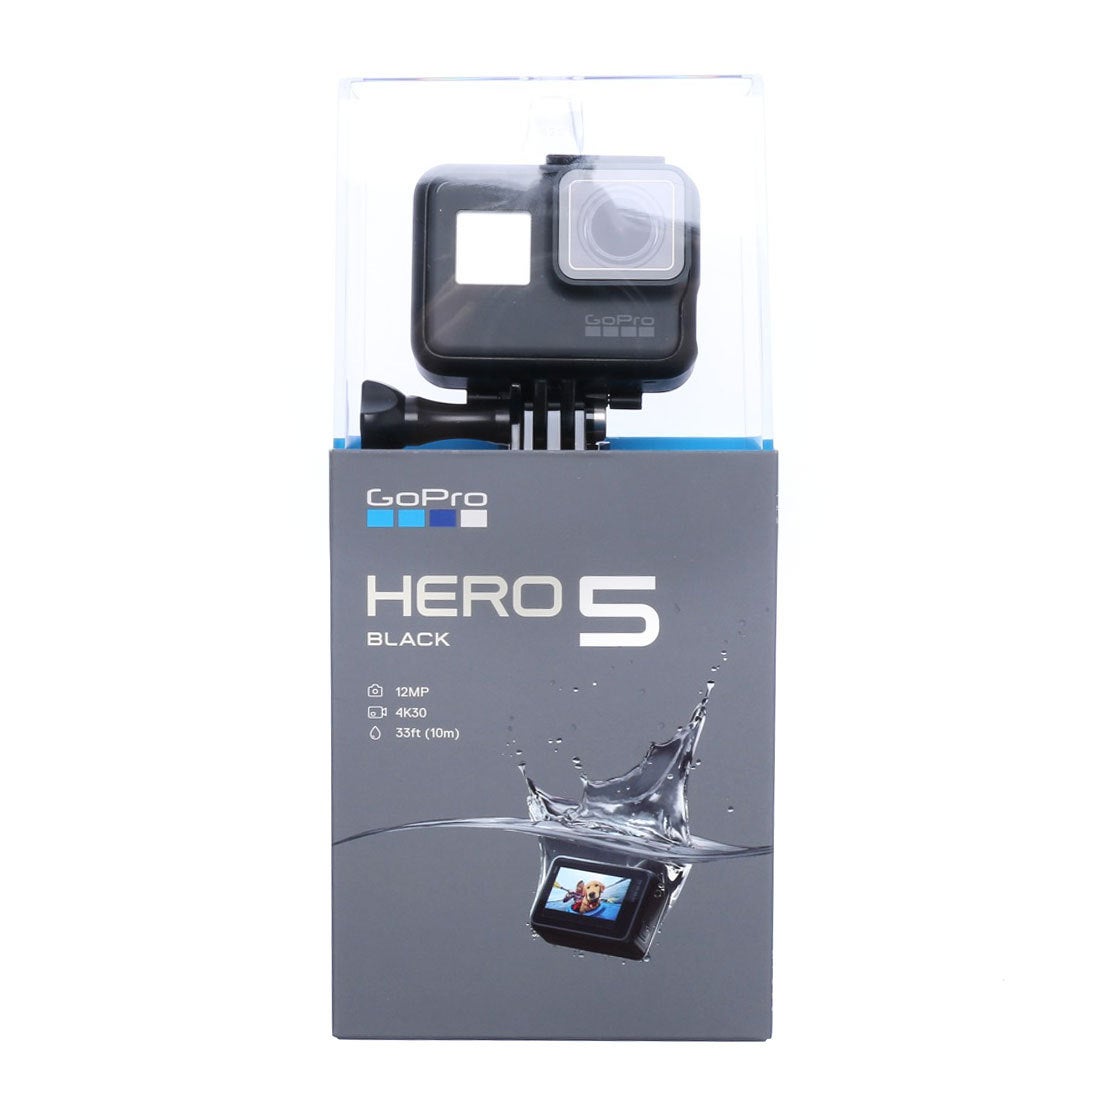 ゴープロ GoPro HERO5 カメラ ブラック CHDHX-502 【返品不可商品